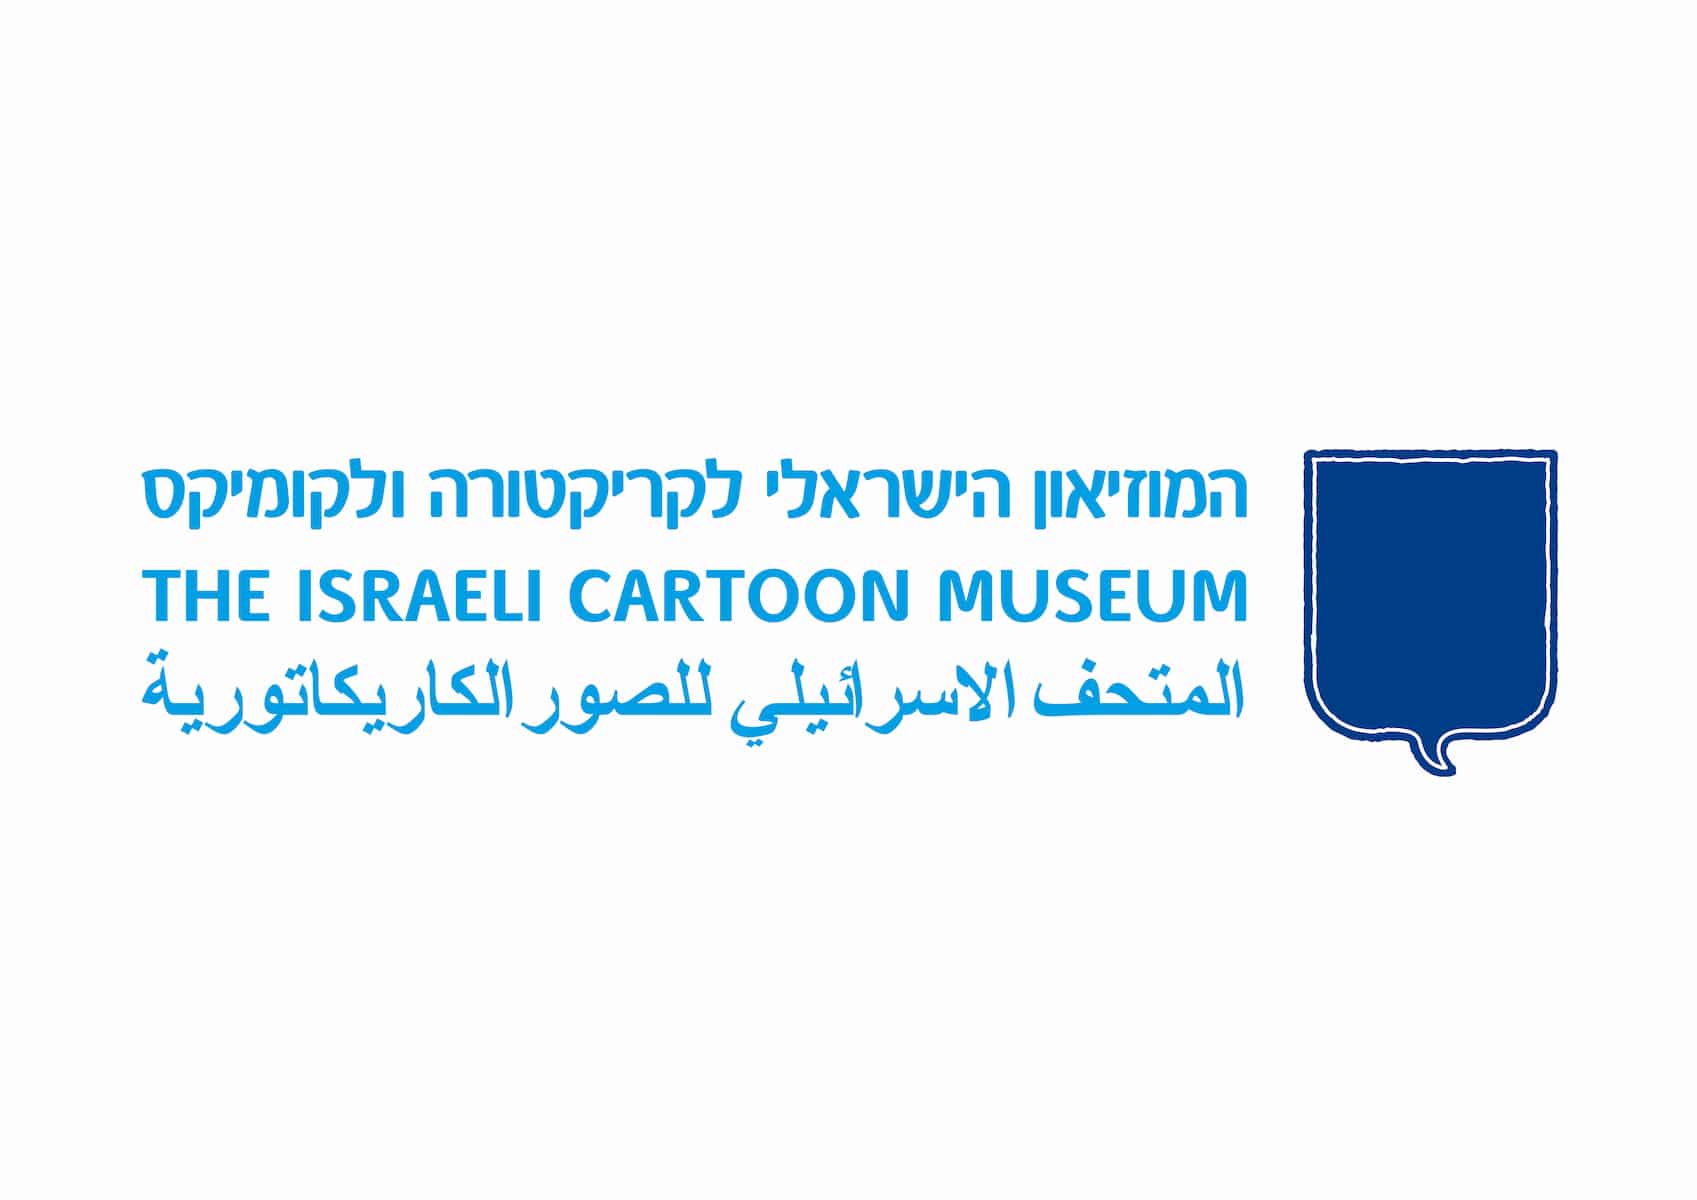 תמונת הפרופיל של המוזיאון הישראלי לקריקטורה ולקומיקס